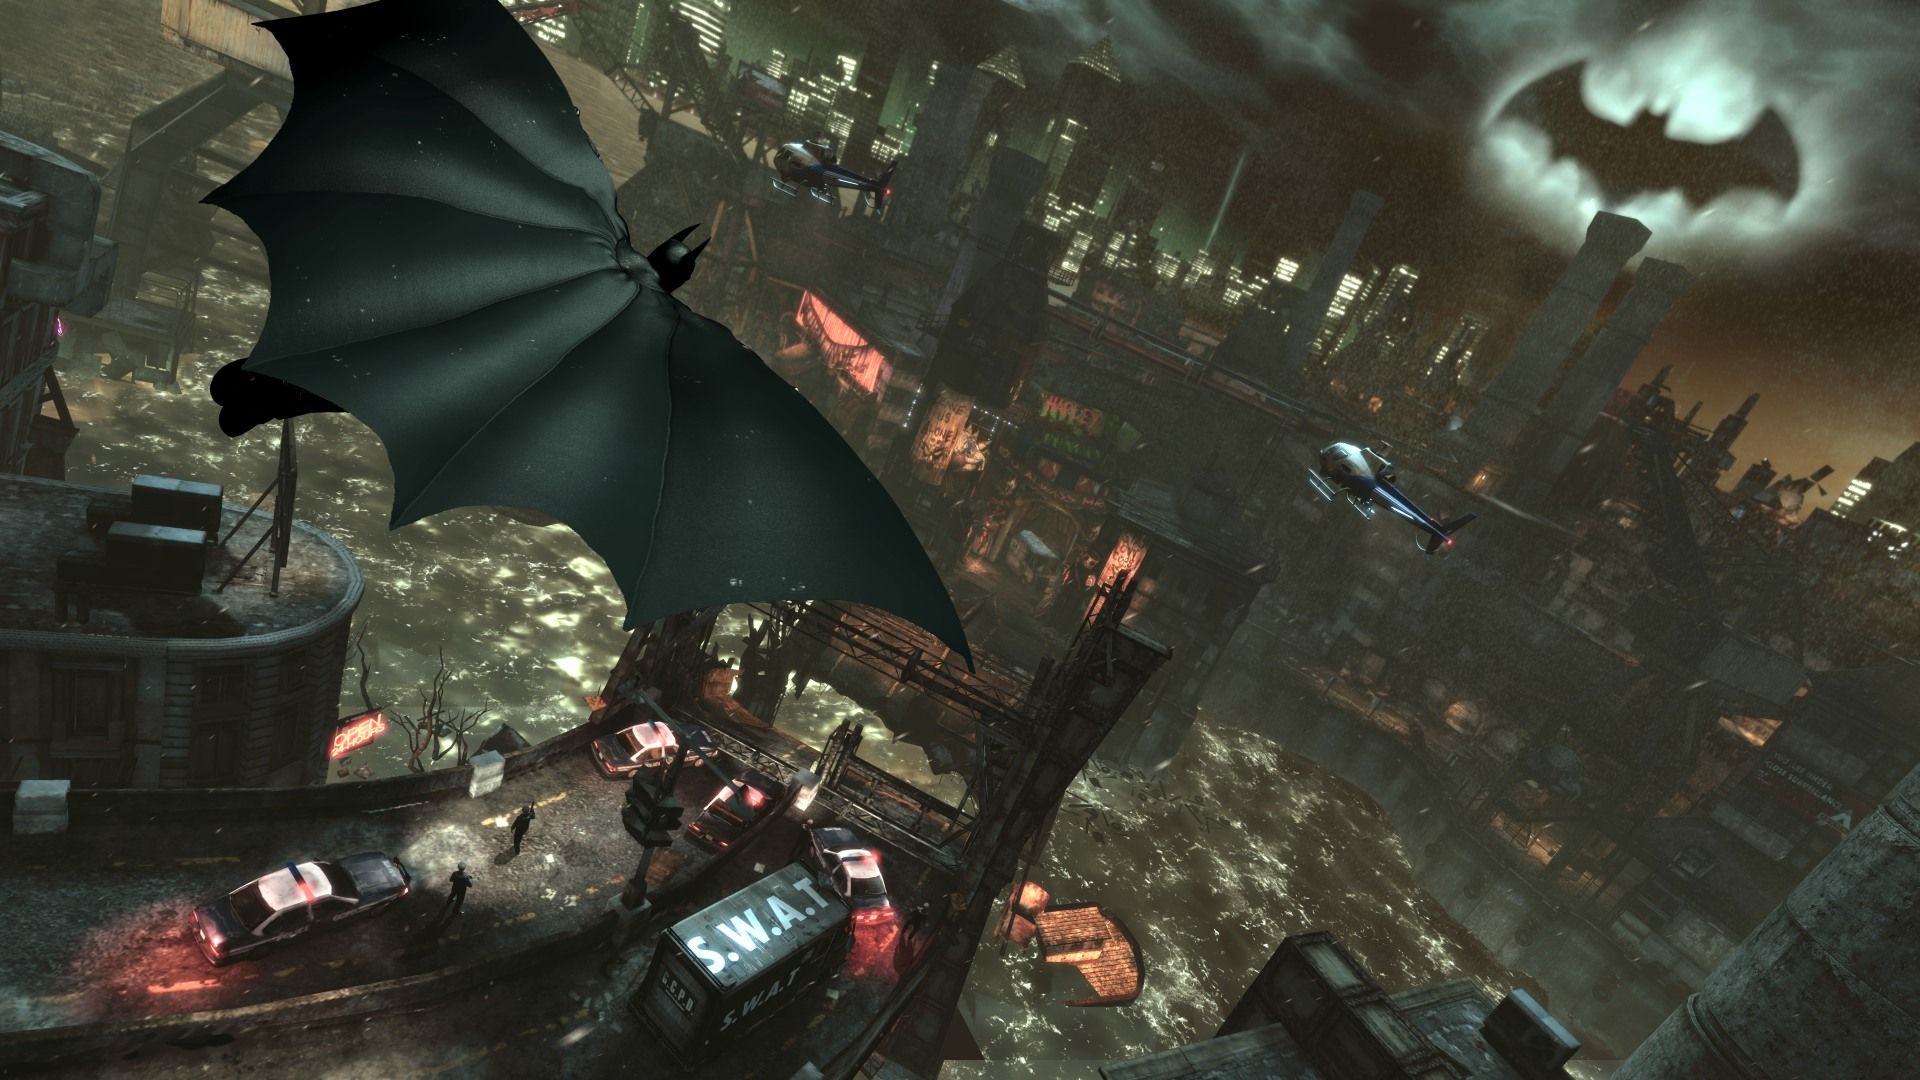 Batman: Arkham City: The Game We Deserve. Deconstructing Video Games